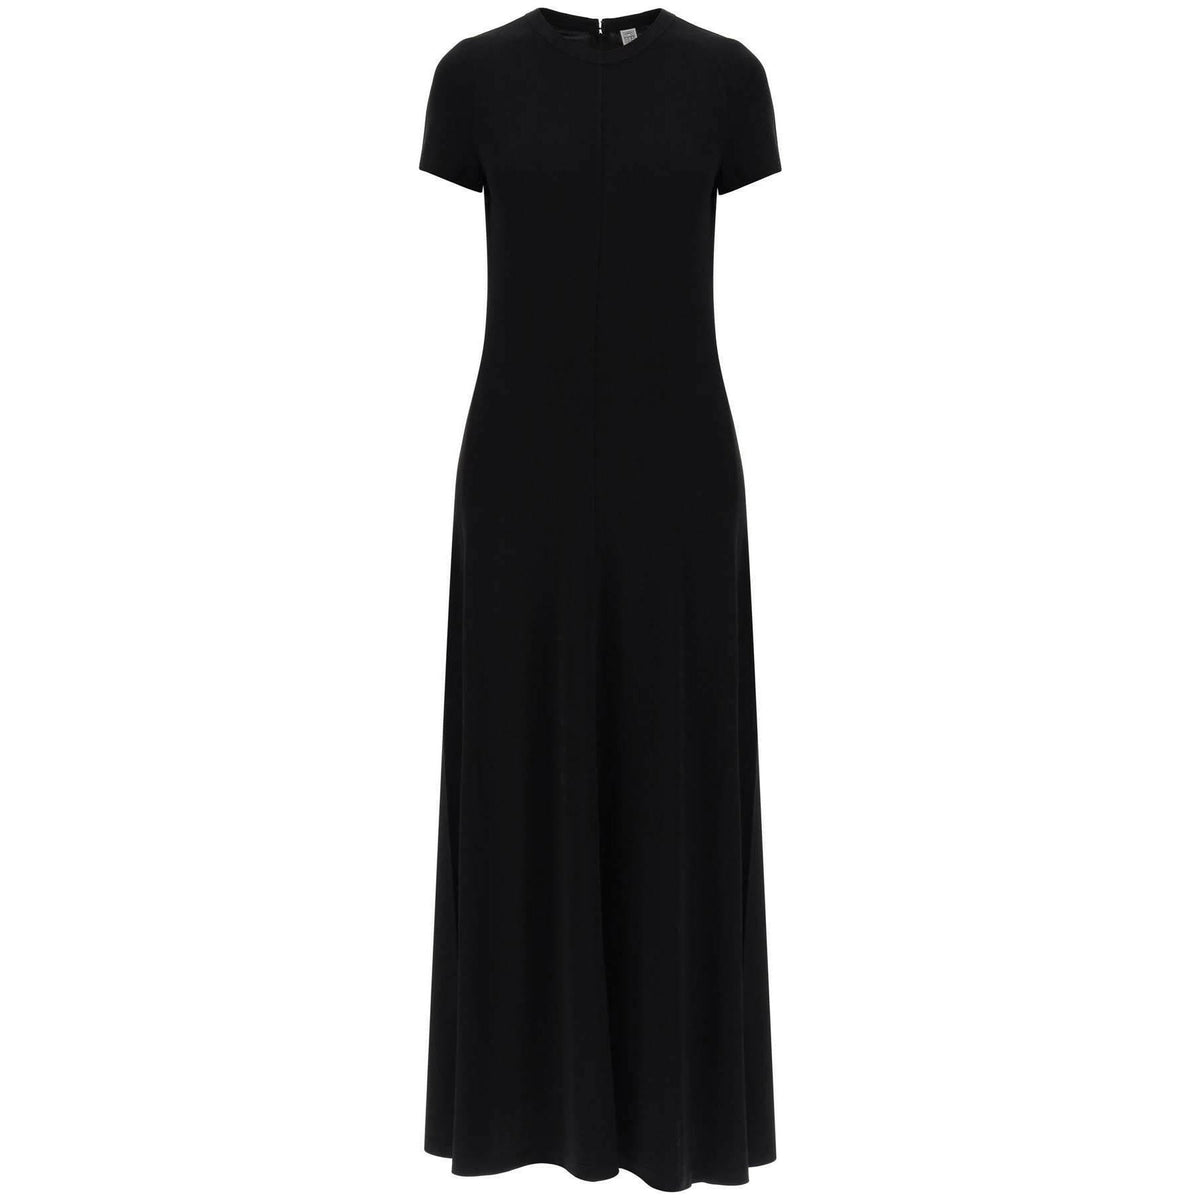 TOTEME - Black Shiny Viscose Jersey Maxi Dress - JOHN JULIA